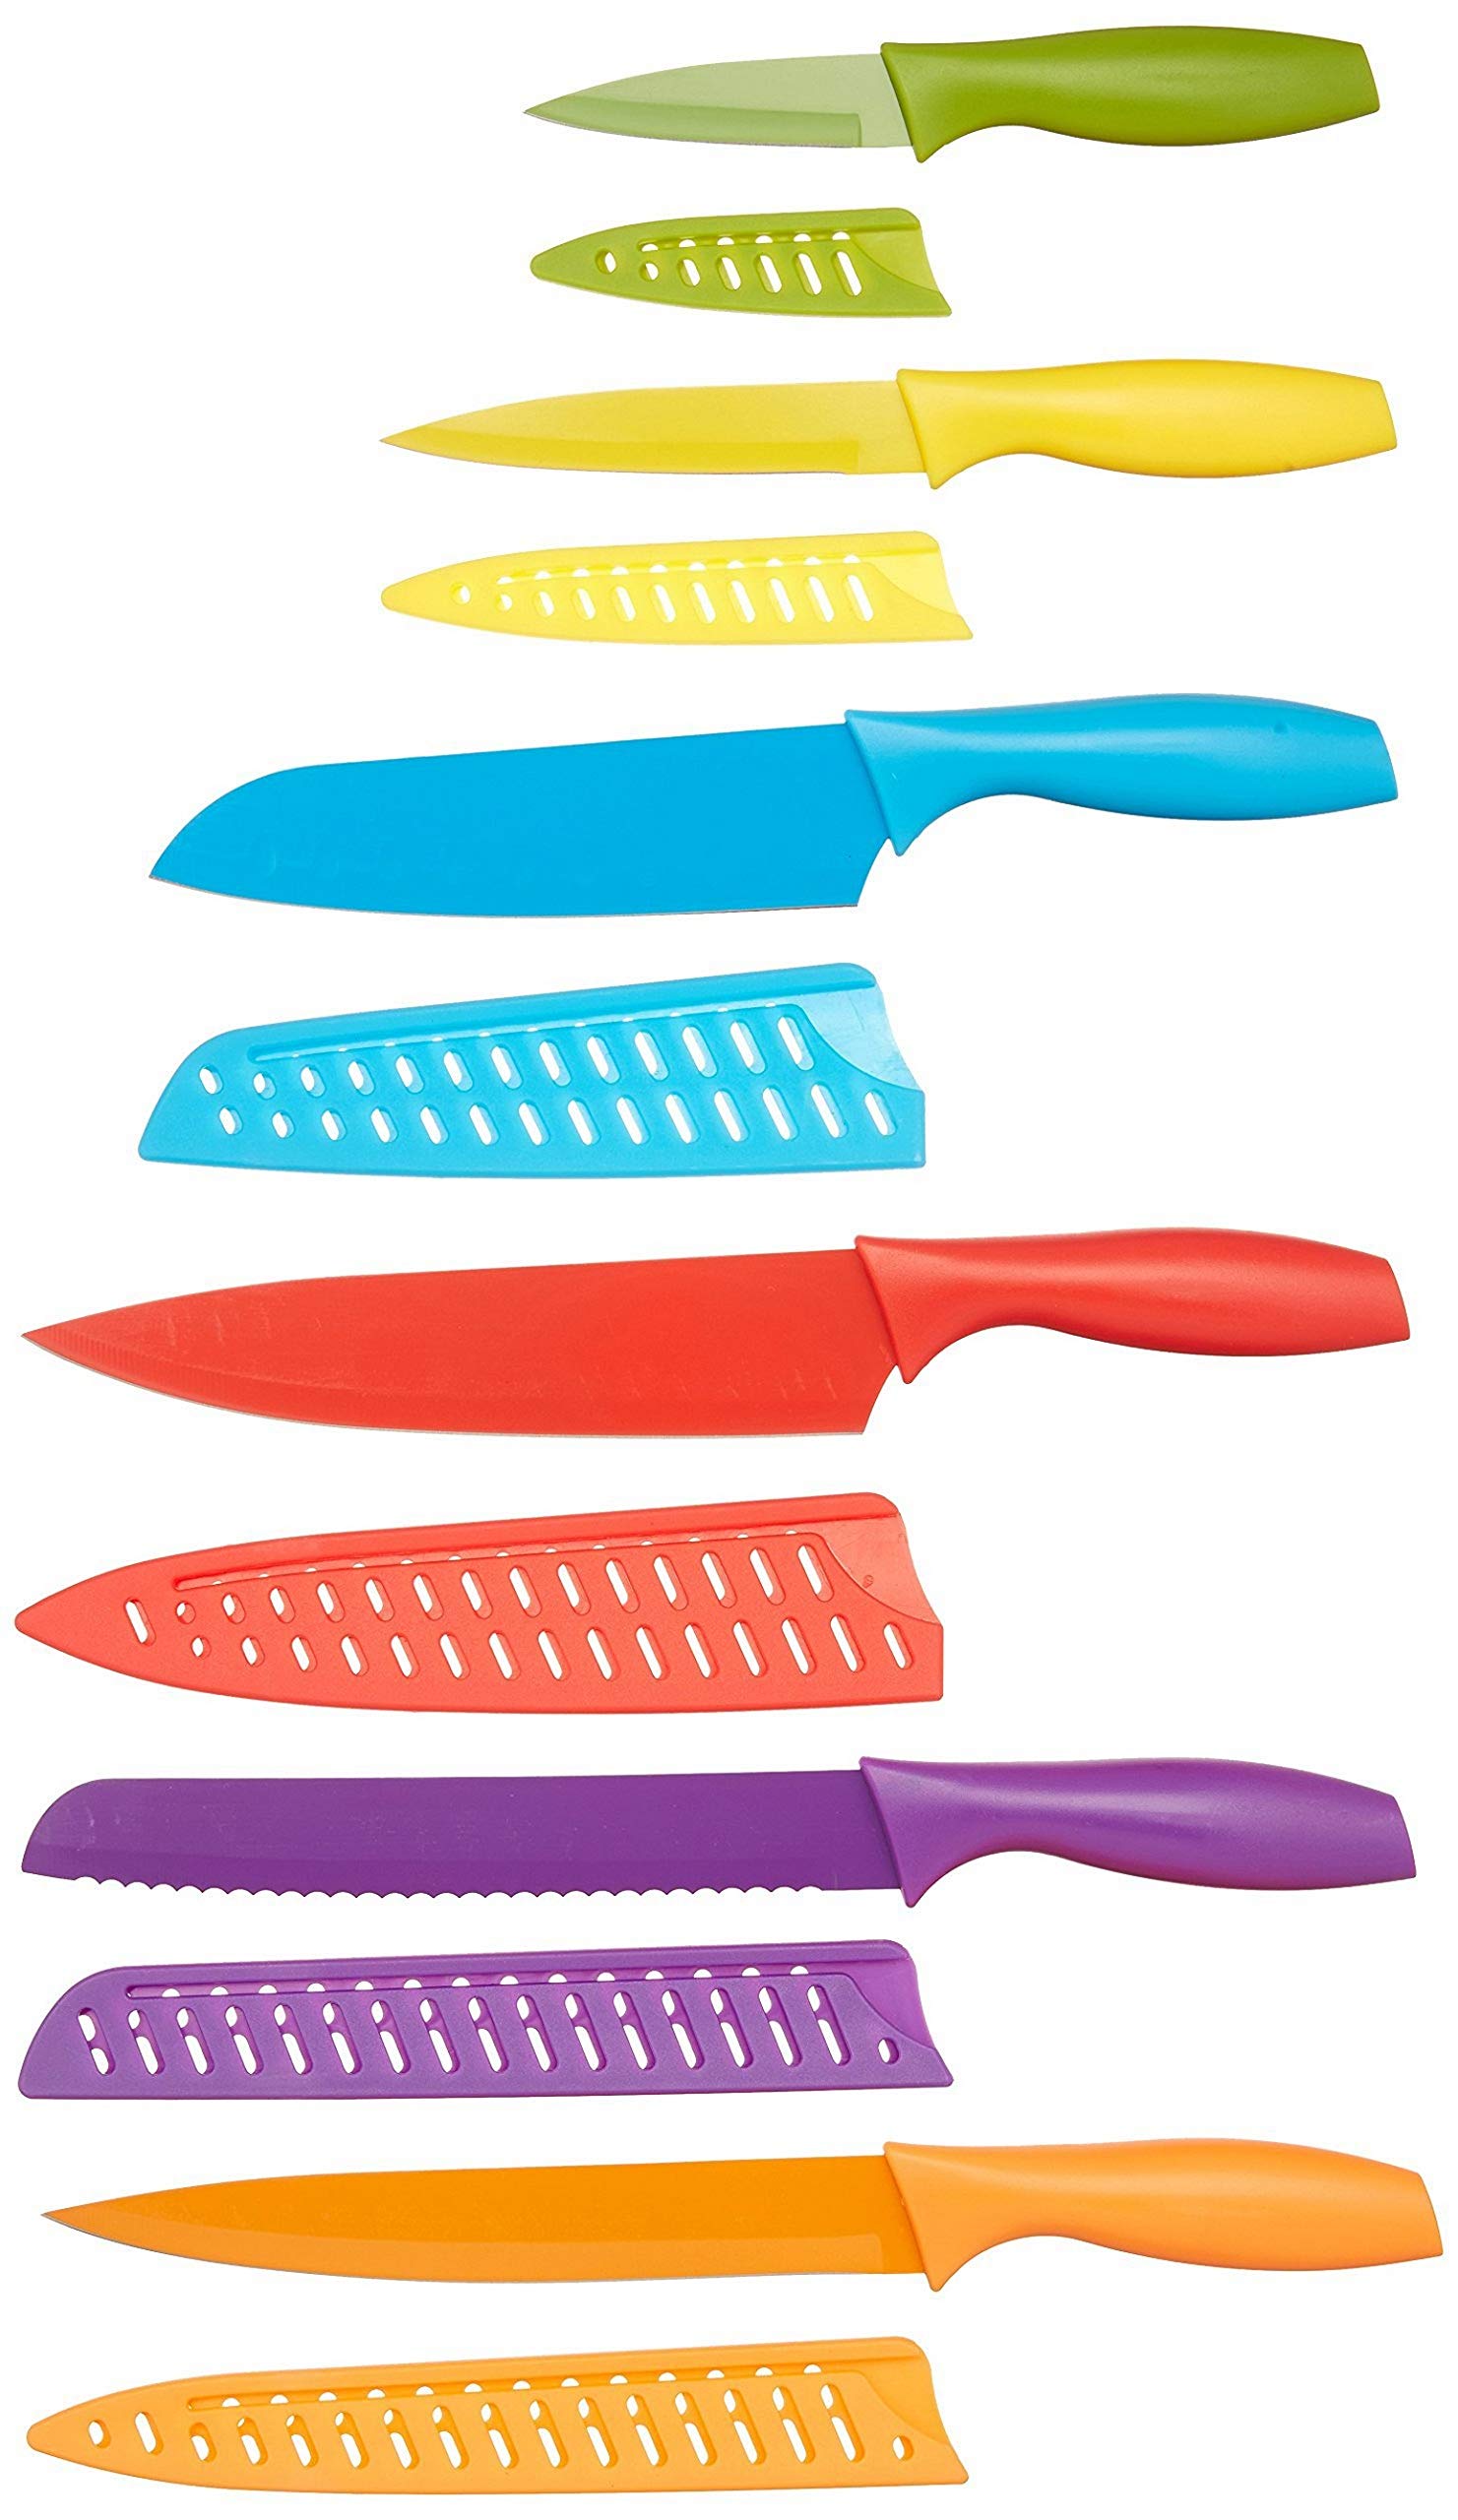 Haute Qualité Amazon Basics lot de couteaux colorés 12 pièces, multicolore OIT7rJoPH à vendre